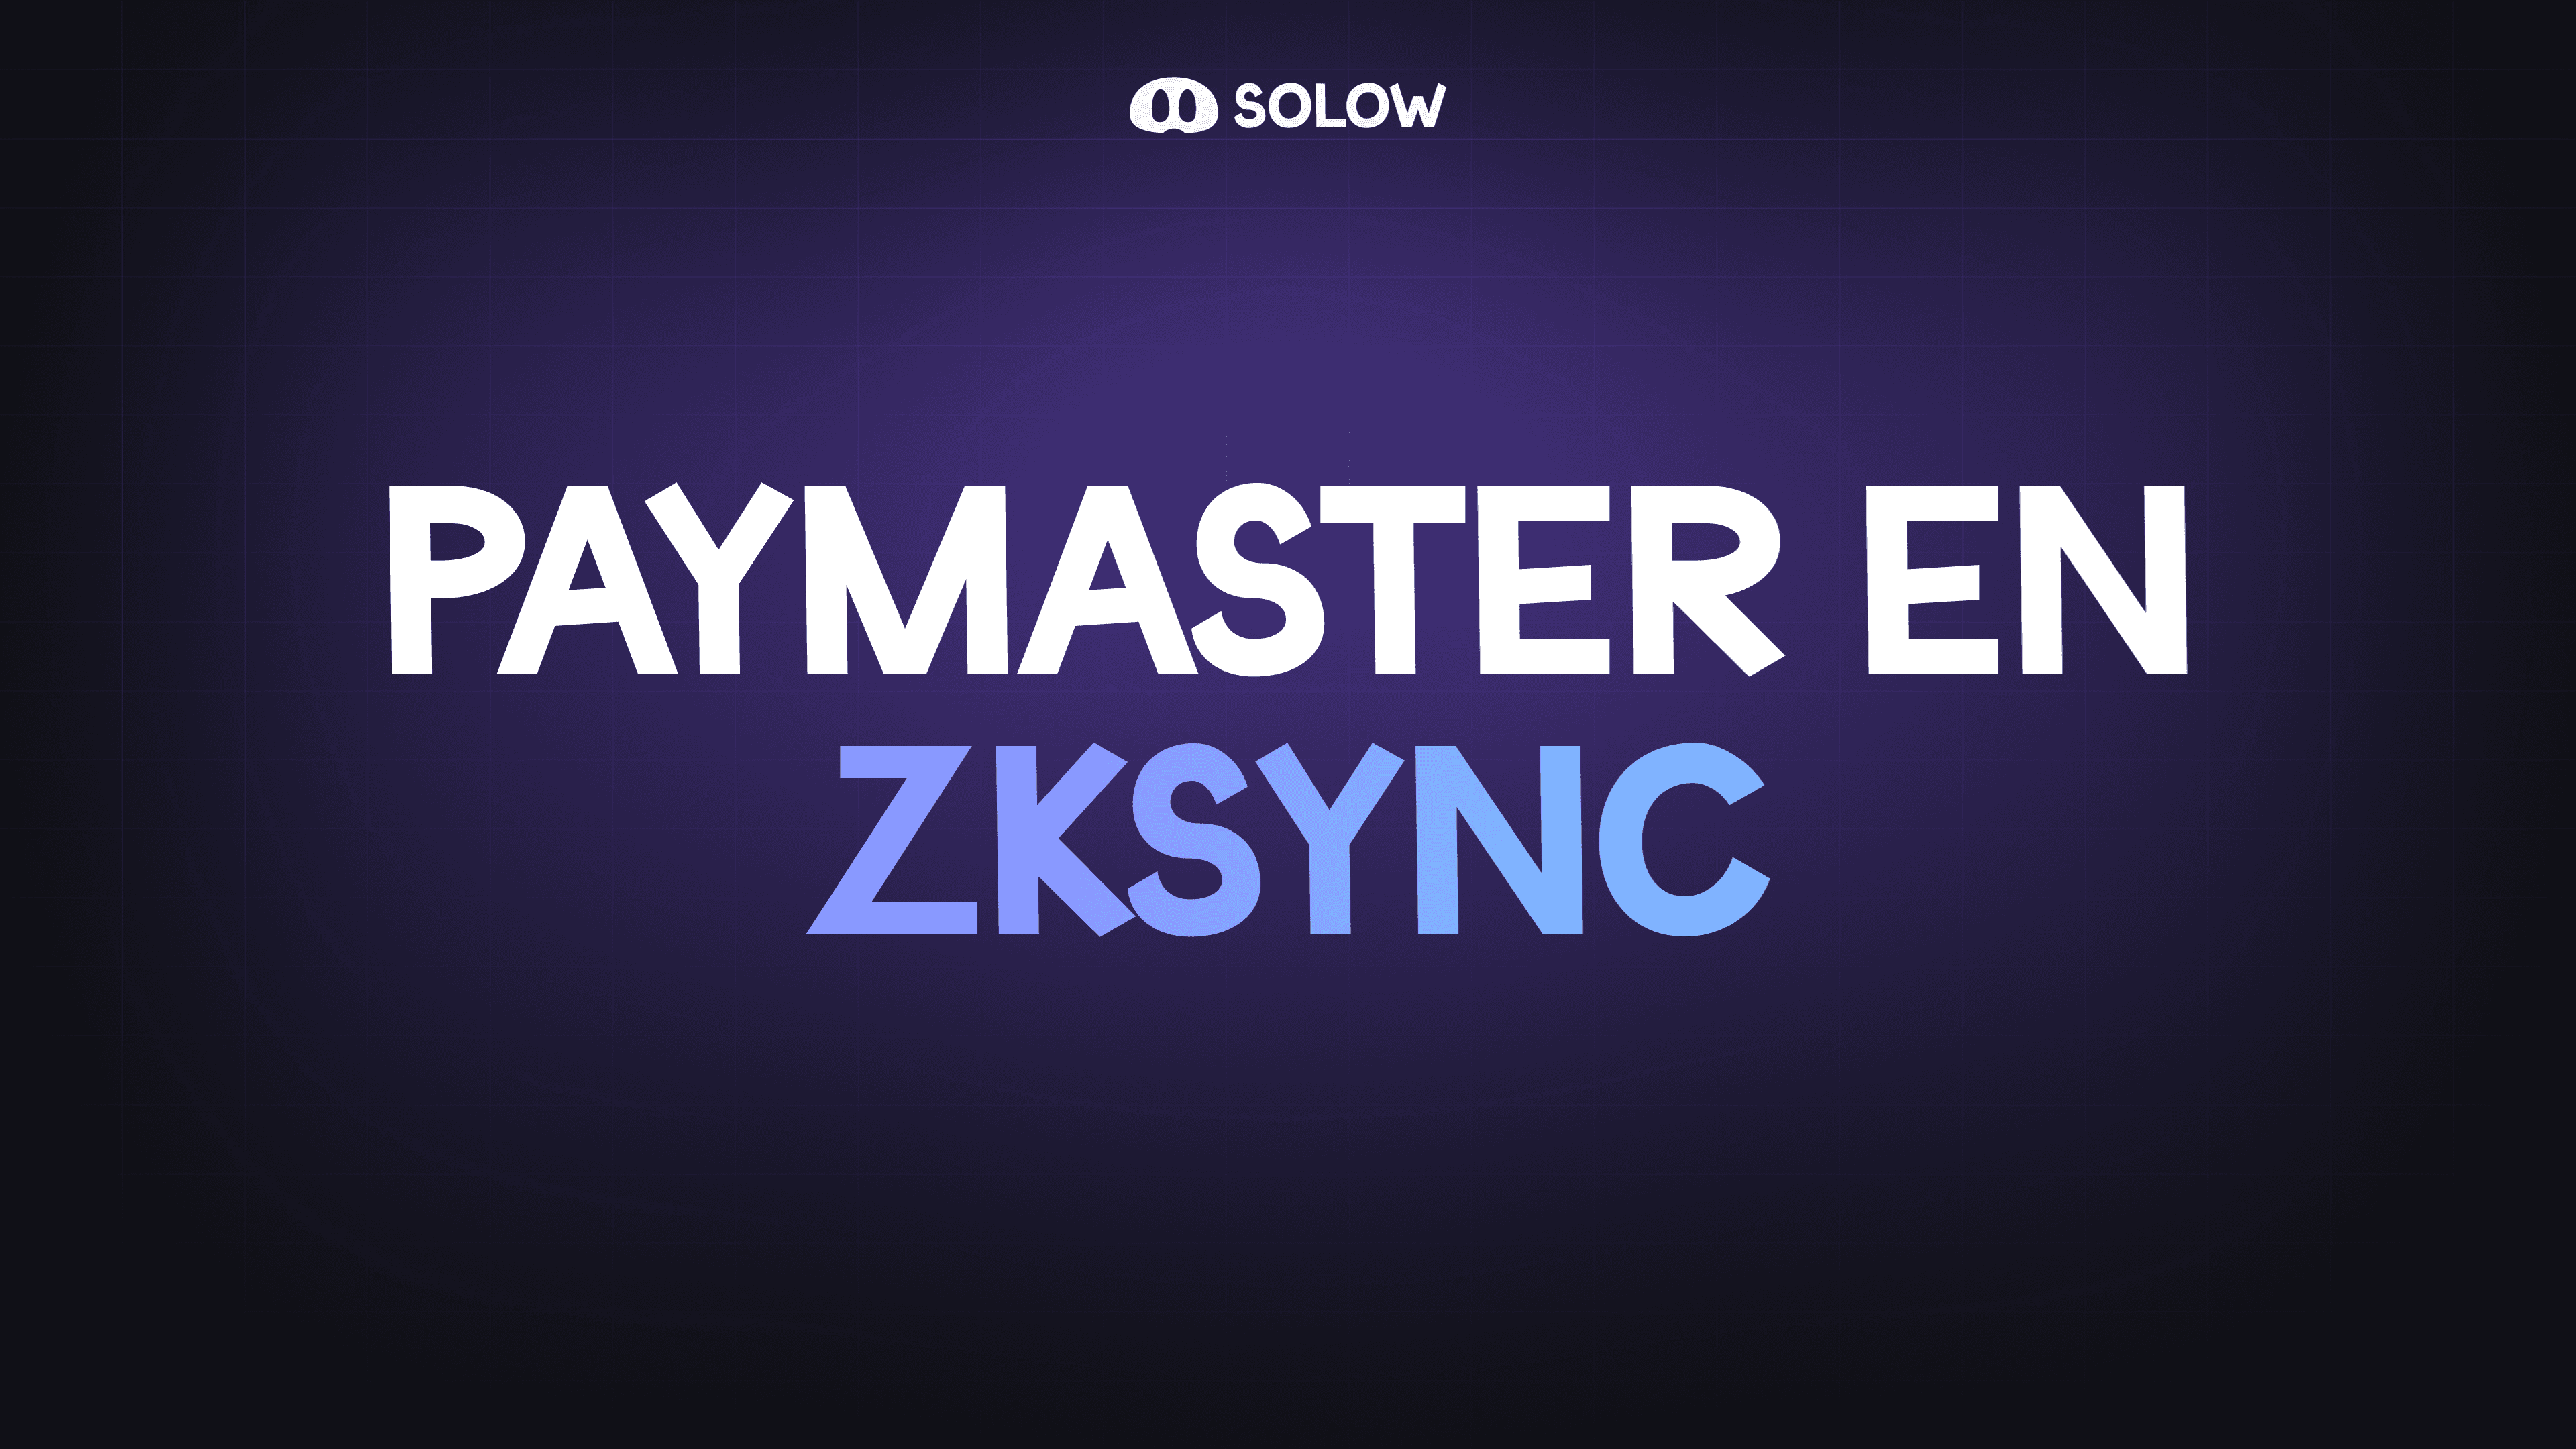 Paymasters en ZKsync